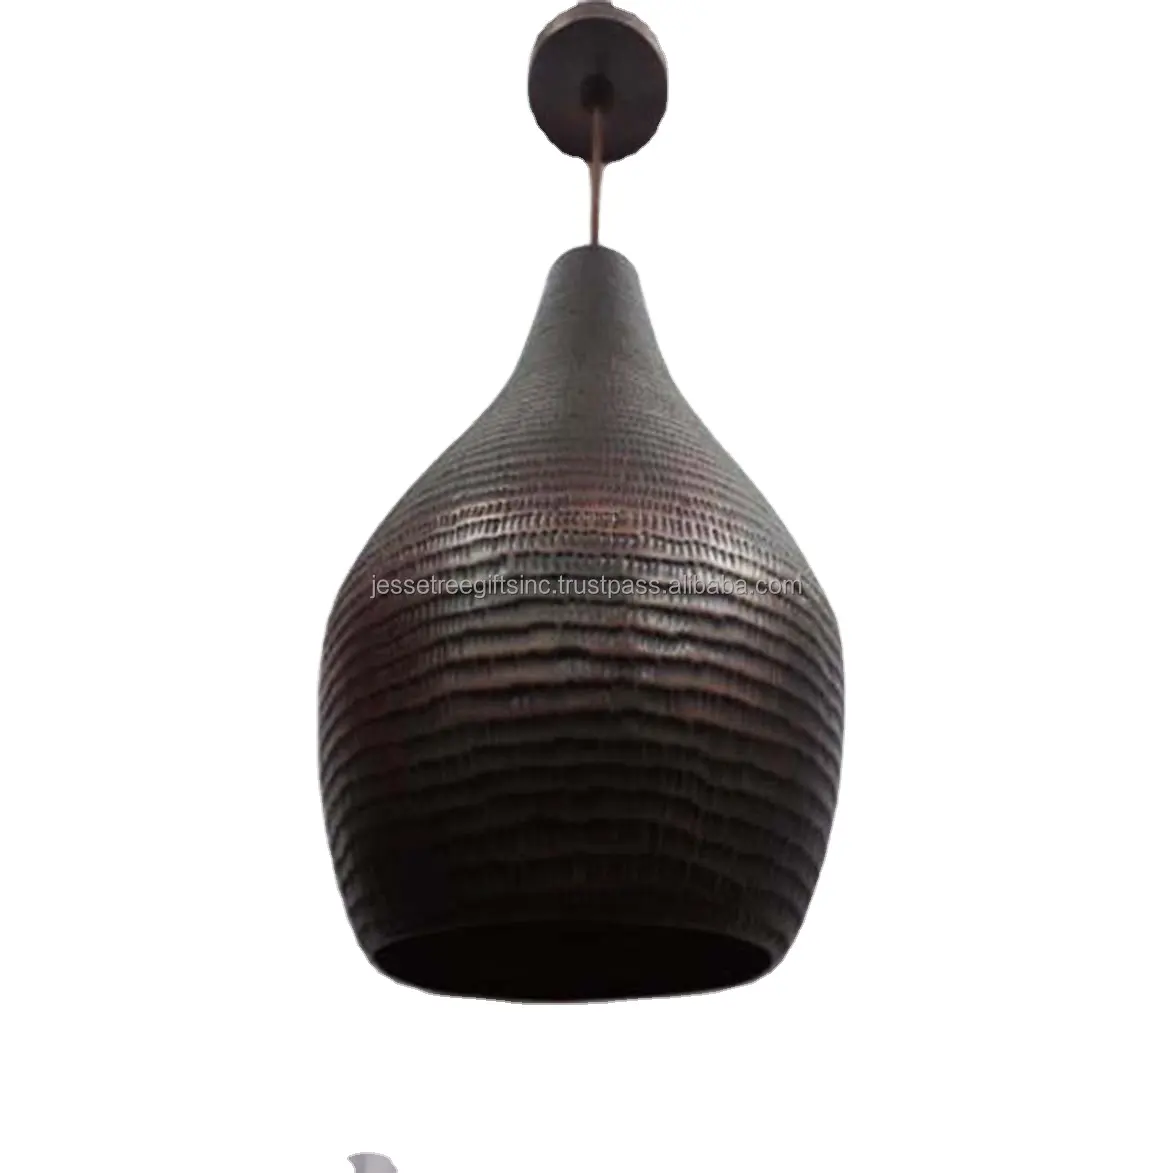 Lámpara colgante de acabado de pintura en aerosol marrón de hoja de metal con diseño en relieve forma redonda excelente calidad para iluminación del hogar